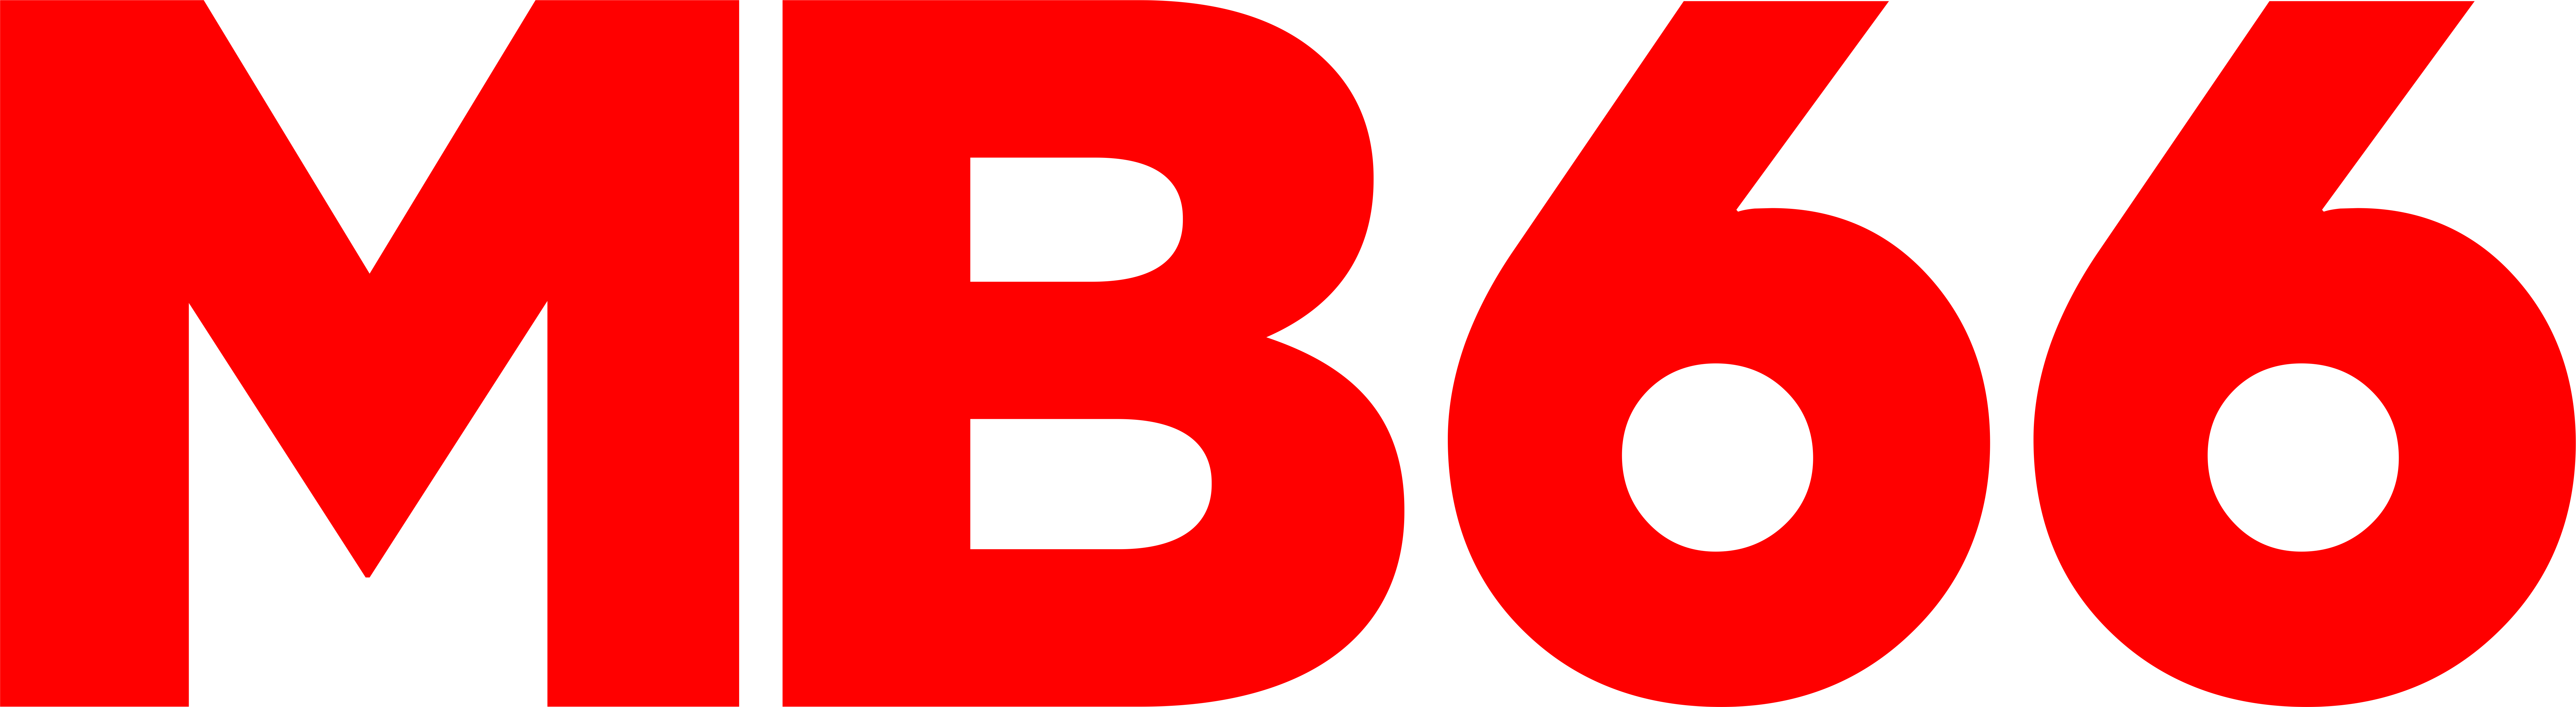 Logo-MB66